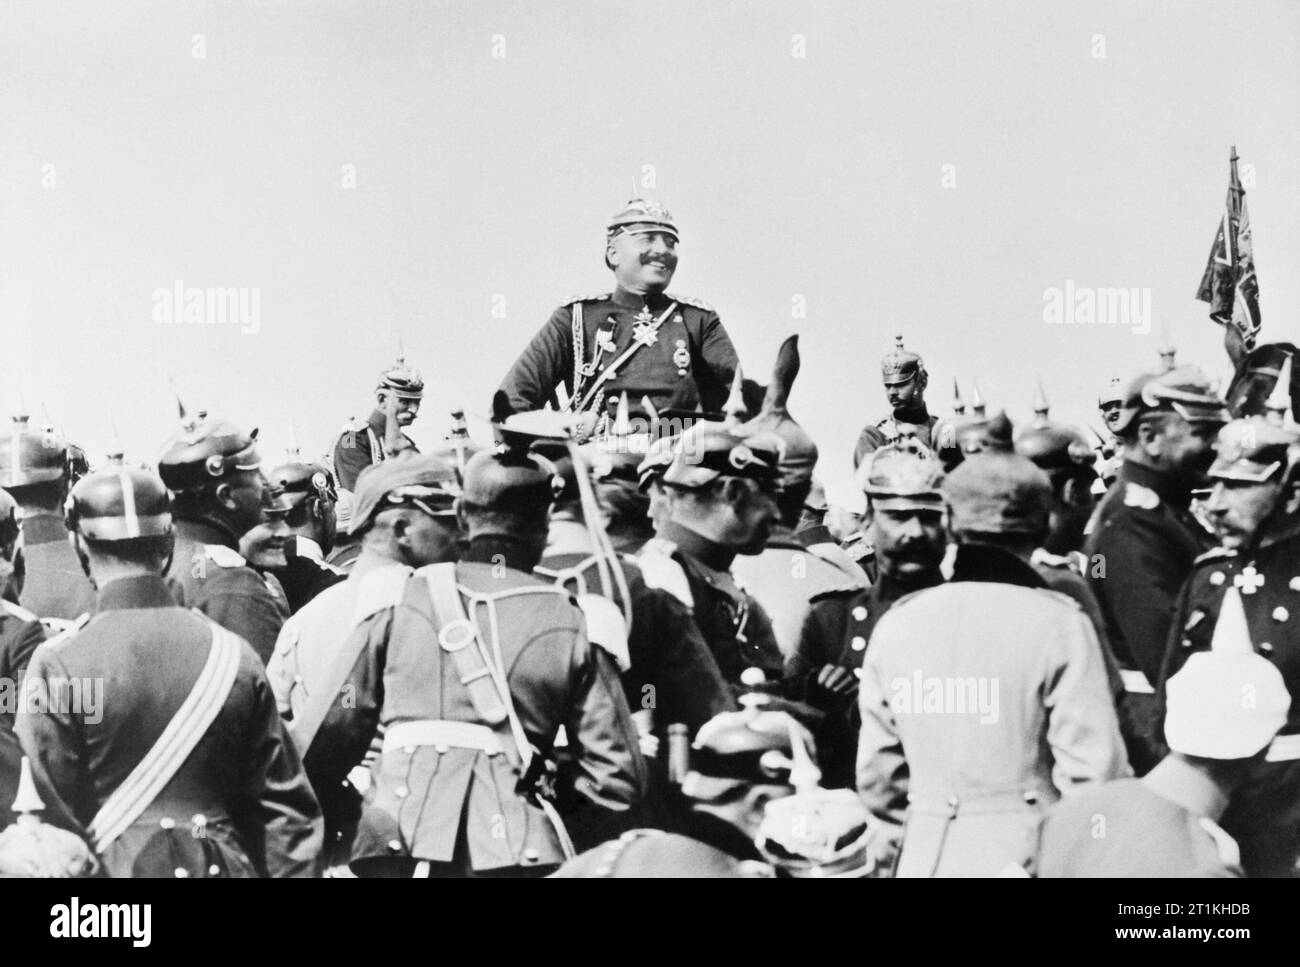 L'armée impériale allemande 1890 - 1913, le Kaiser, à cheval, photographié en souriant et entouré par ses hommes pendant les manoeuvres de 1905. Cette photographie est devenu par la suite un droit de propagande populaire, l'identification du Kaiser avec le simple soldat. Banque D'Images